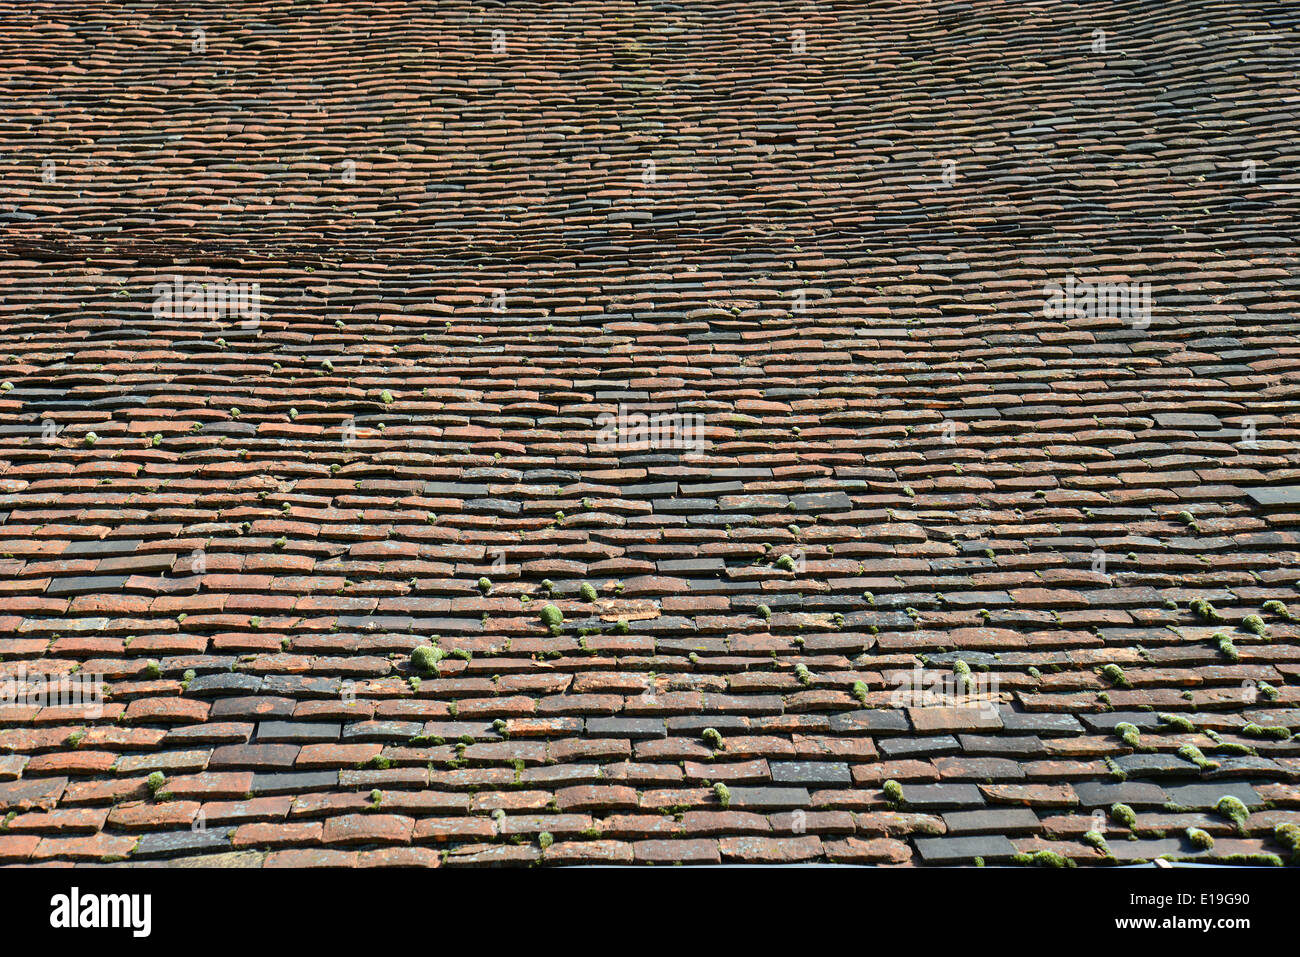 Fliesen auf Dach der großen Scheune, Gutshof, Ruislip, London Borough of Hillingdon, Greater London, England, Vereinigtes Königreich Stockfoto